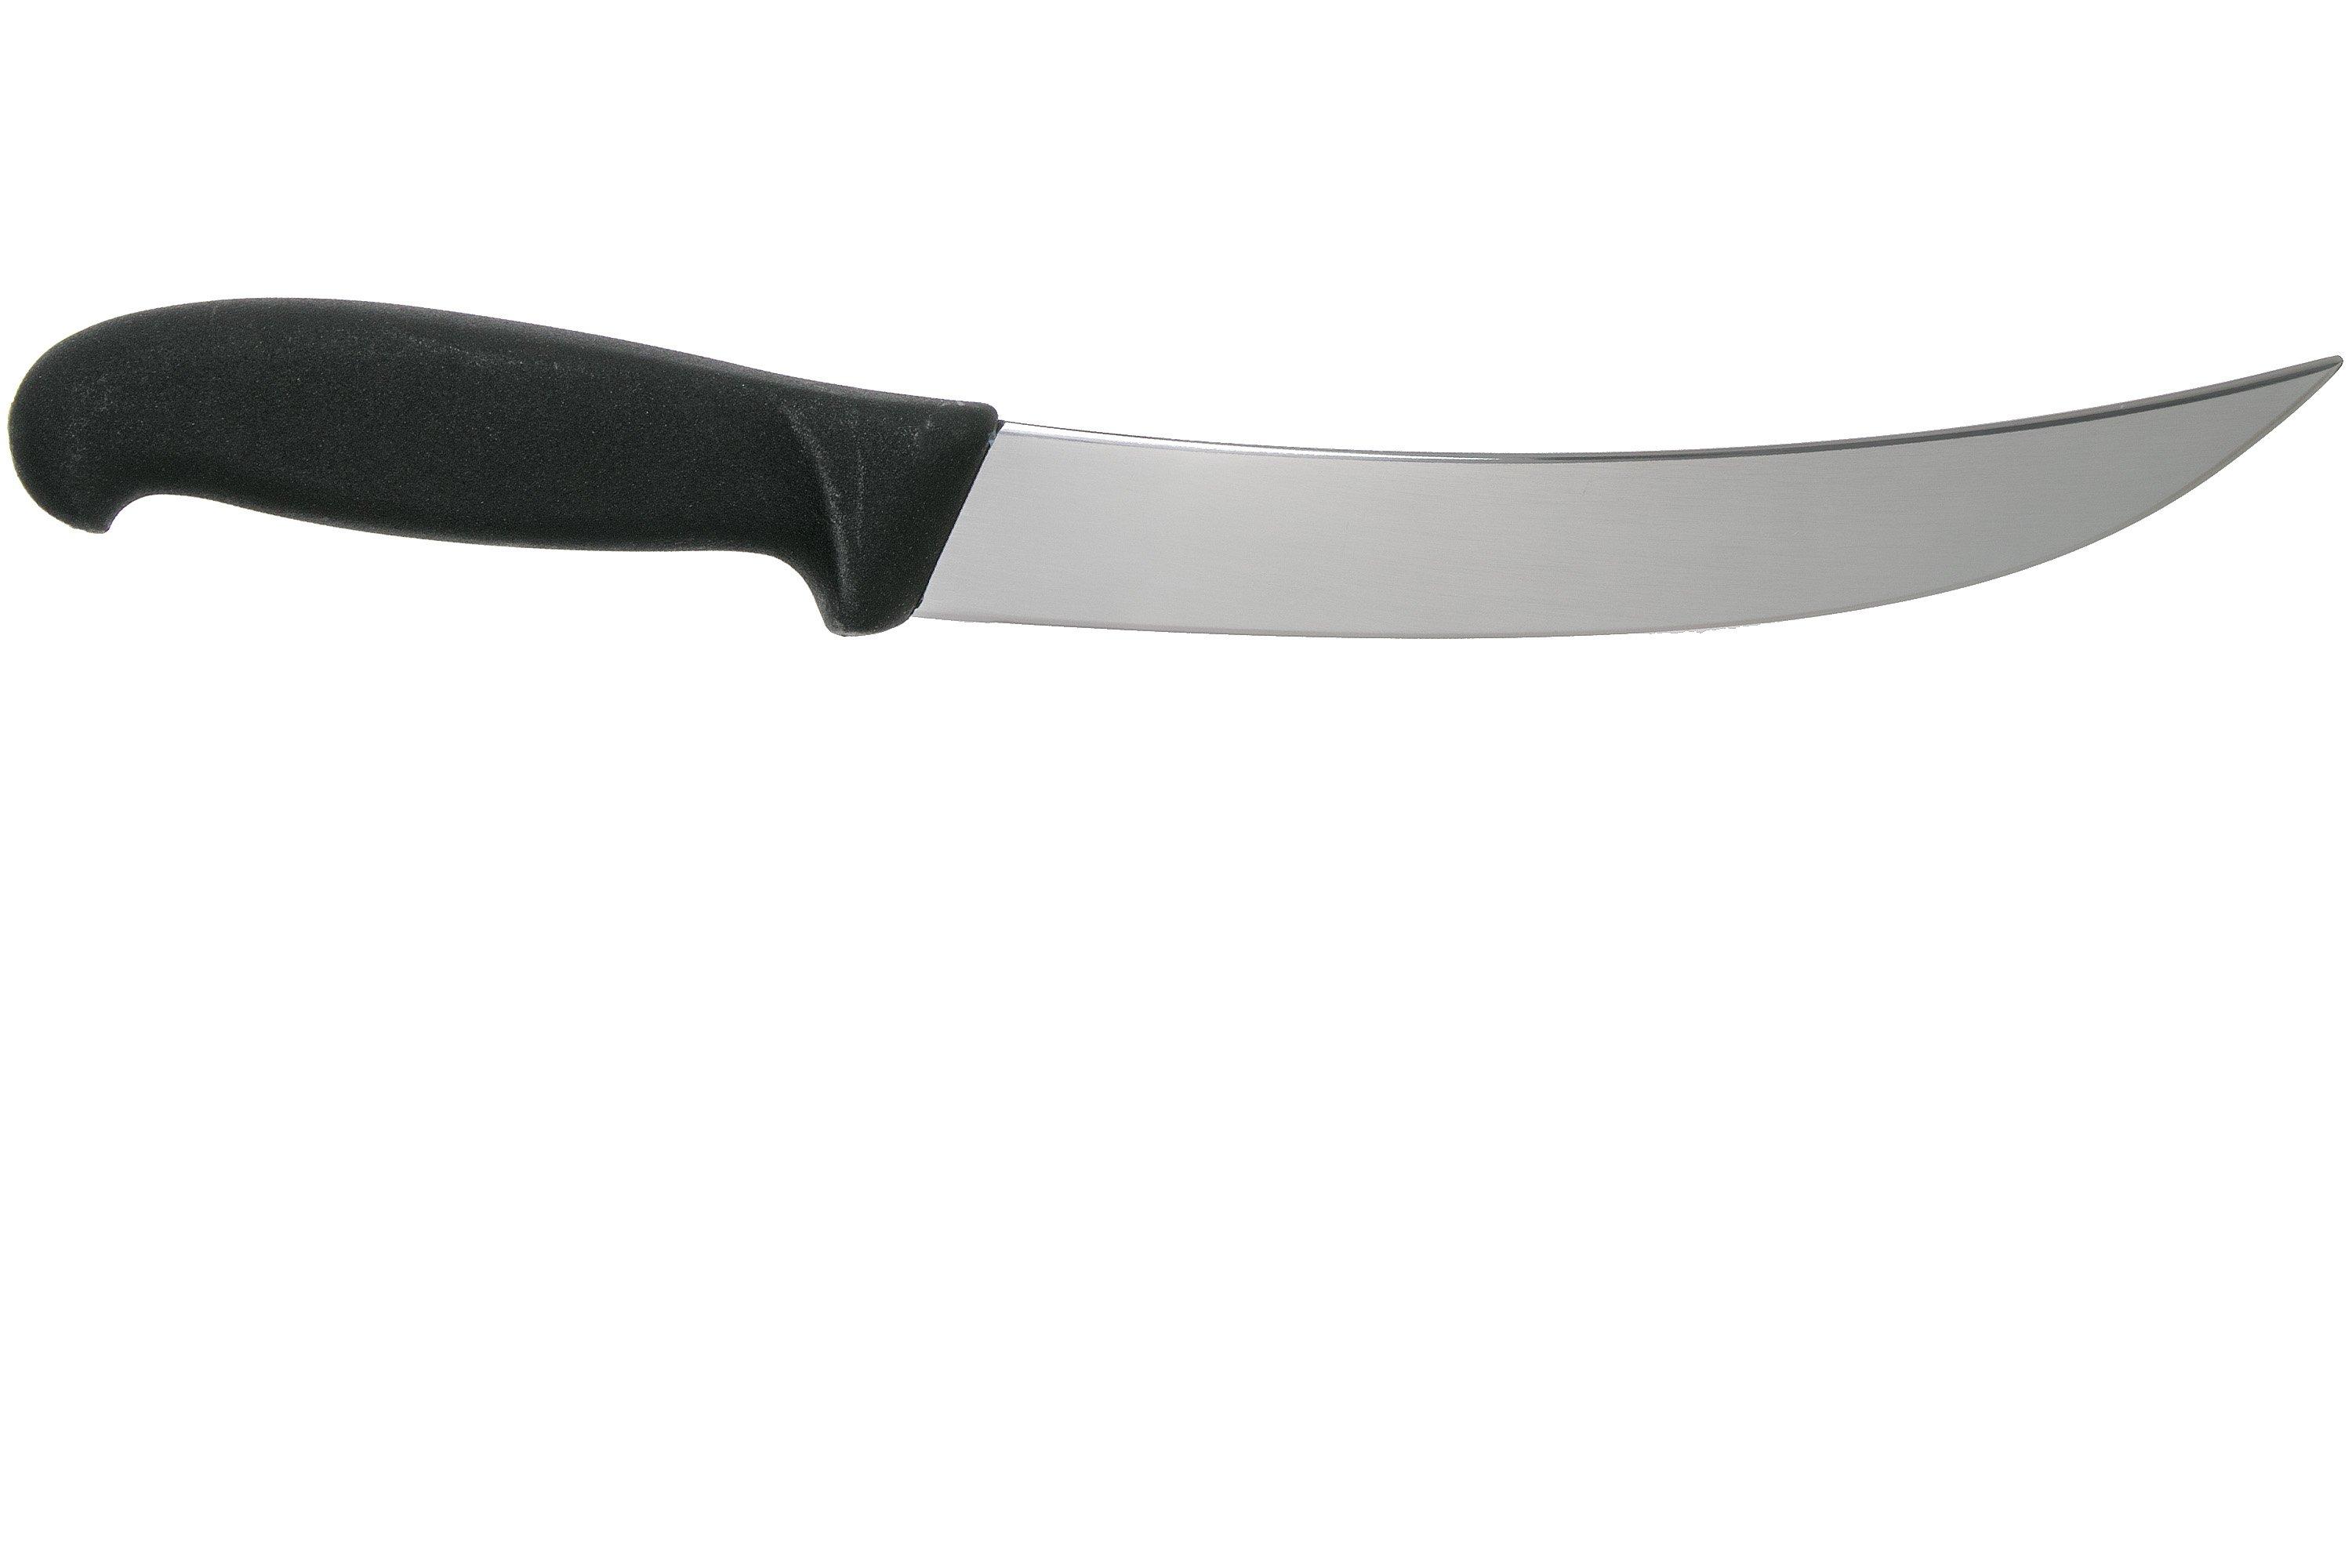 Cuchillo para Chef Fibrox Profesional Victorinox 25 cm – FERREKUPER